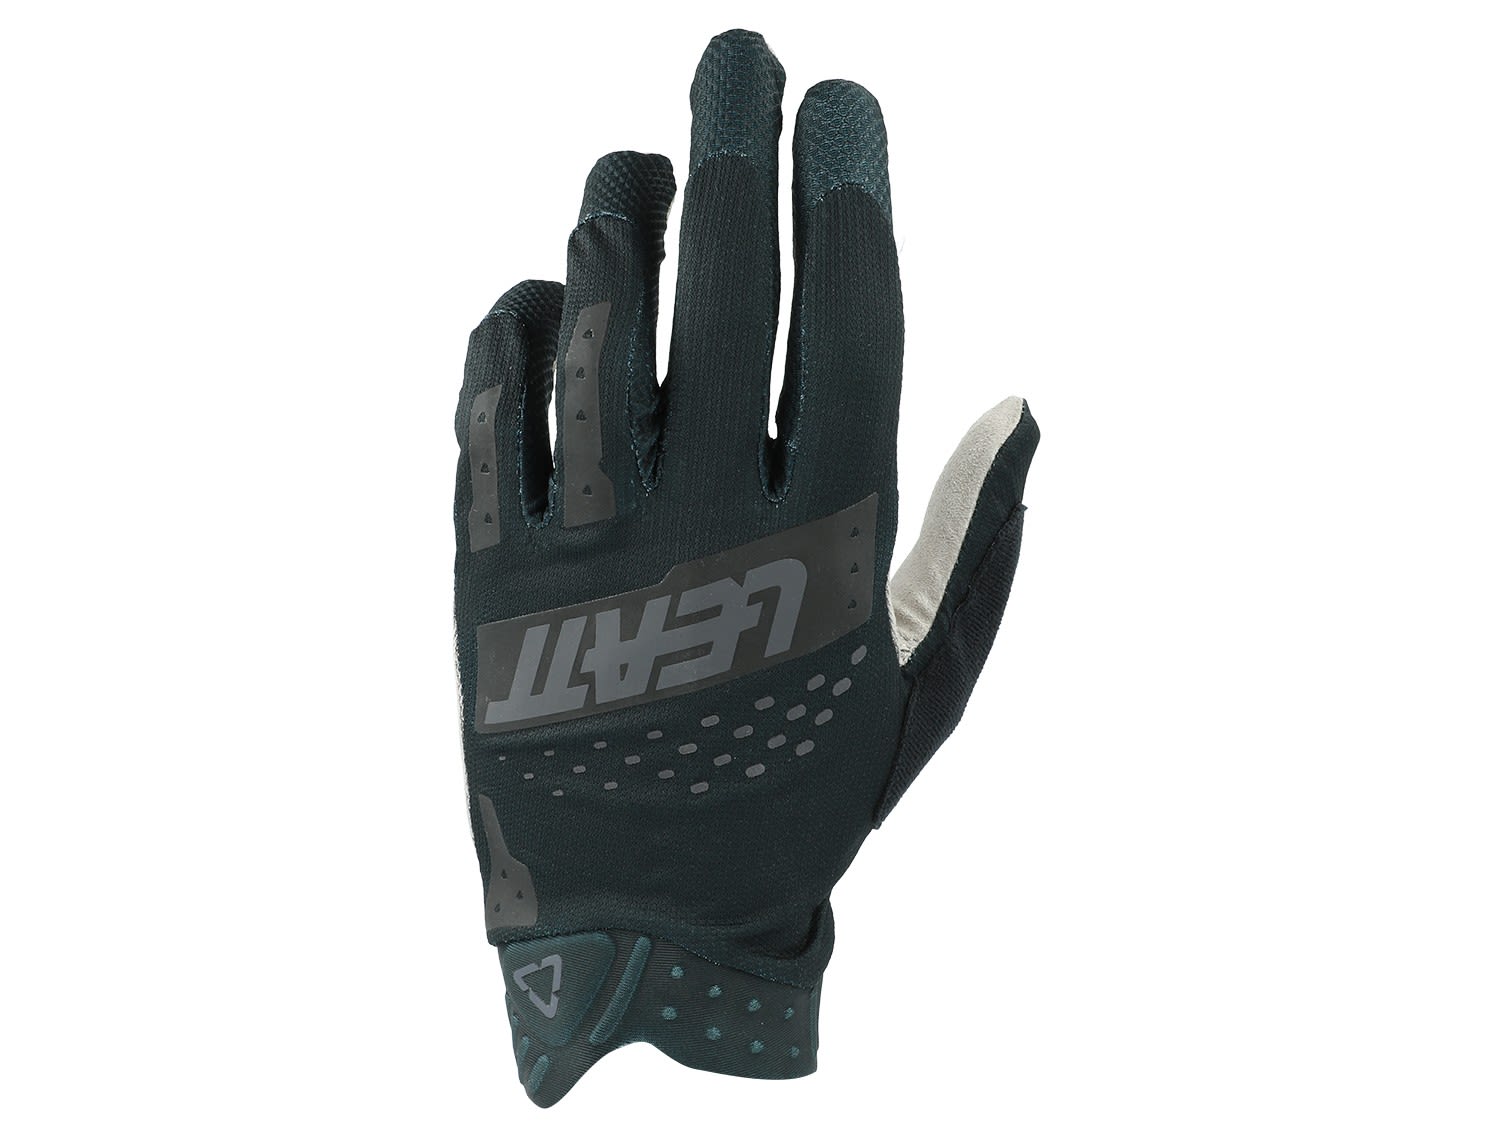 Leatt Glove MTB 2-0 X-Flow Schwarz- Fingerhandschuhe- Grsse S - Farbe Black unter Leatt